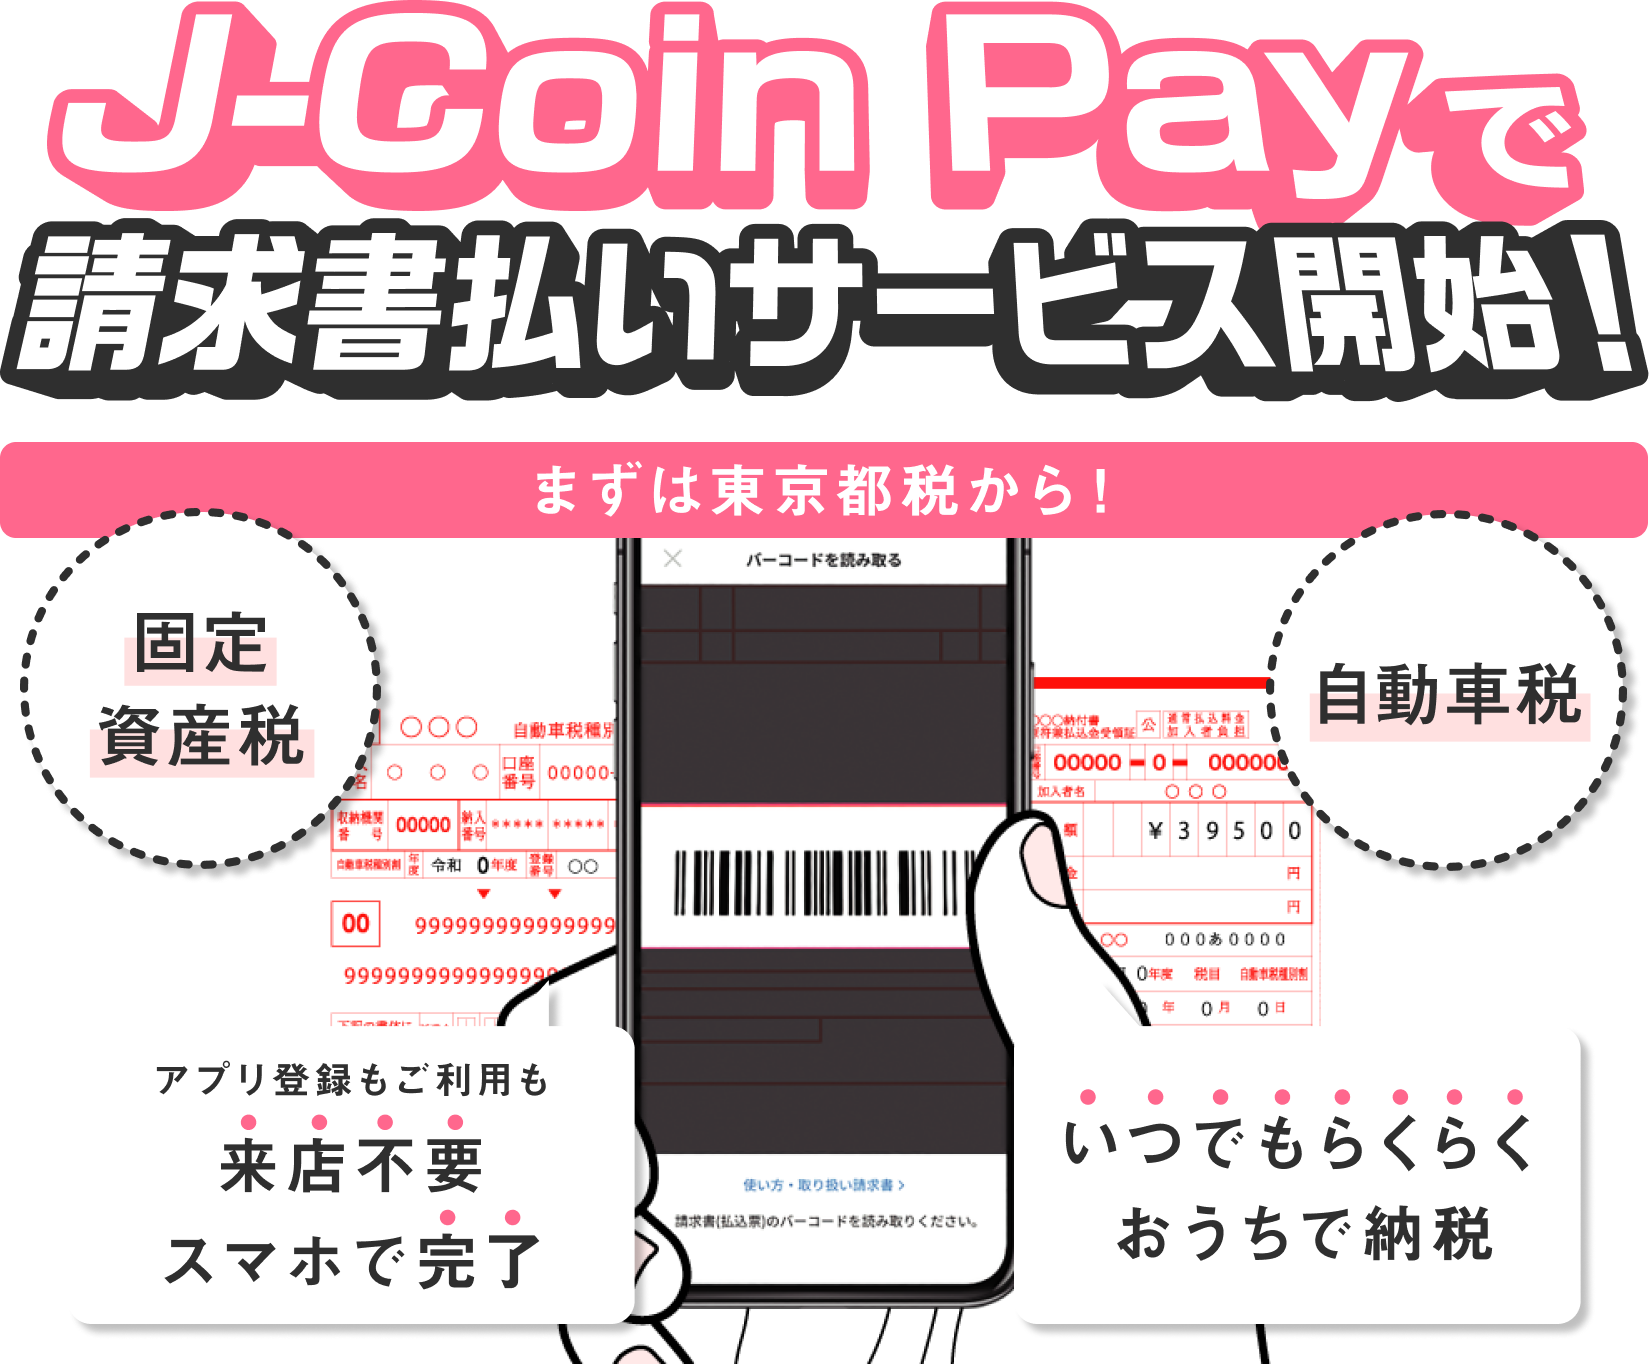 スマホでらくらく納税 公共料金等の請求書からバーコードを読込 決済できる J Coin請求書払い の提供開始について J Coin Payのプレスリリース